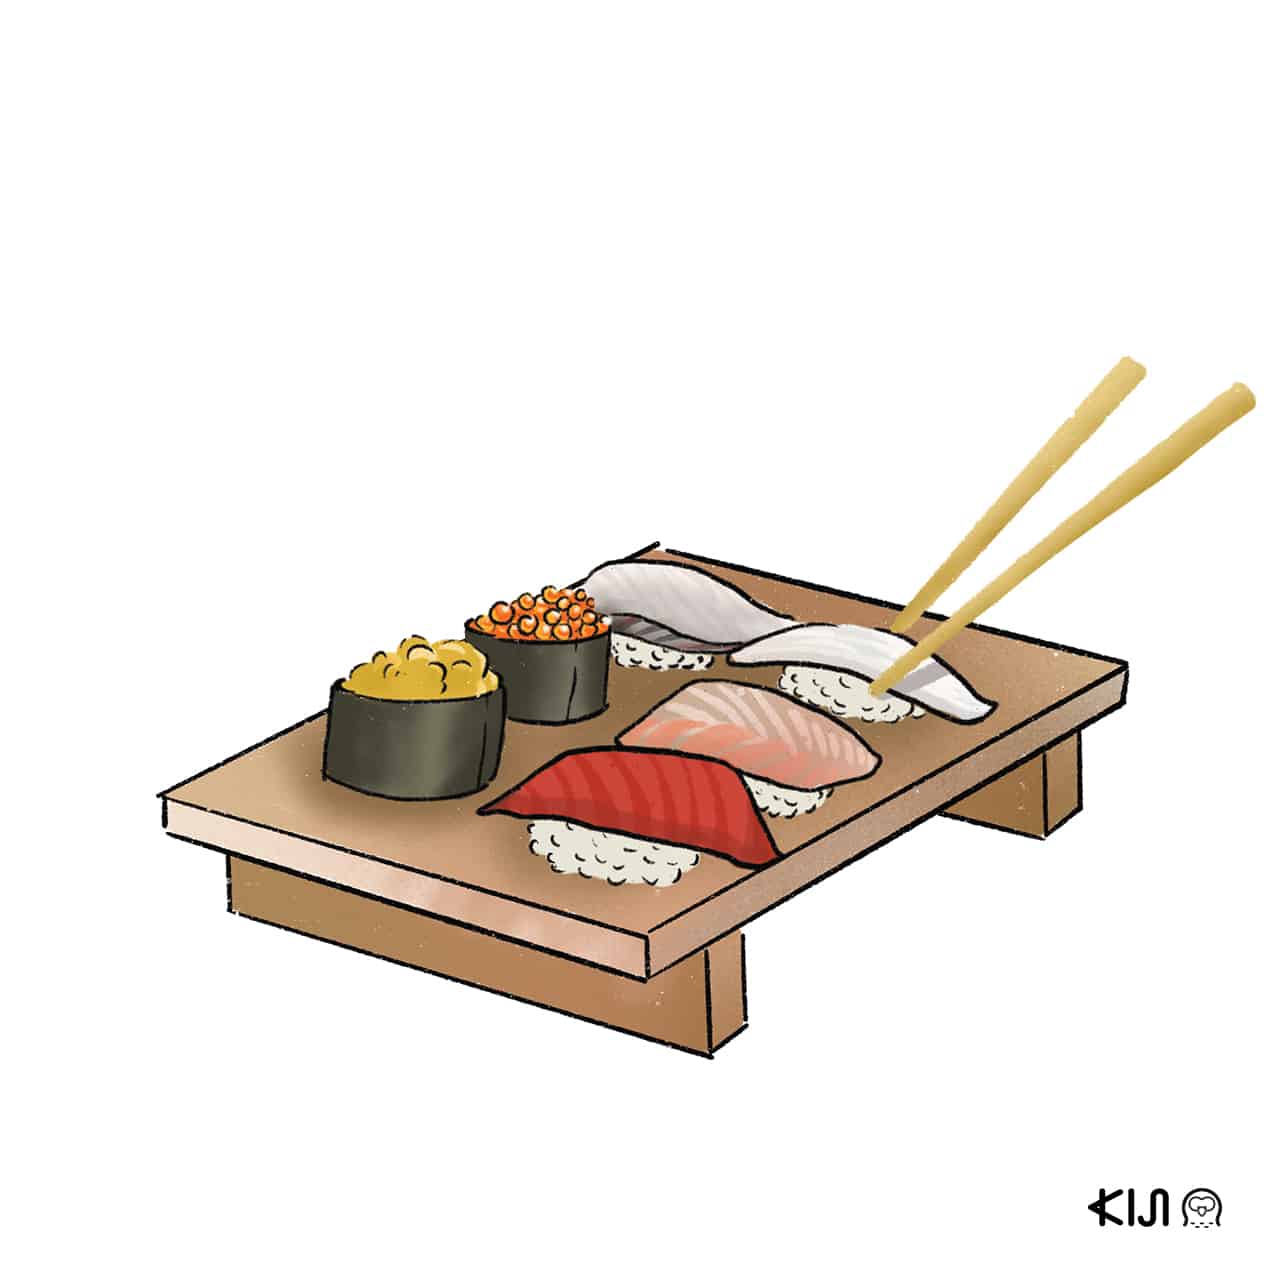 sushi kiji - ควรเริ่มสั่งซูชิหรือเริ่มกินซูชิคำใดก่อน